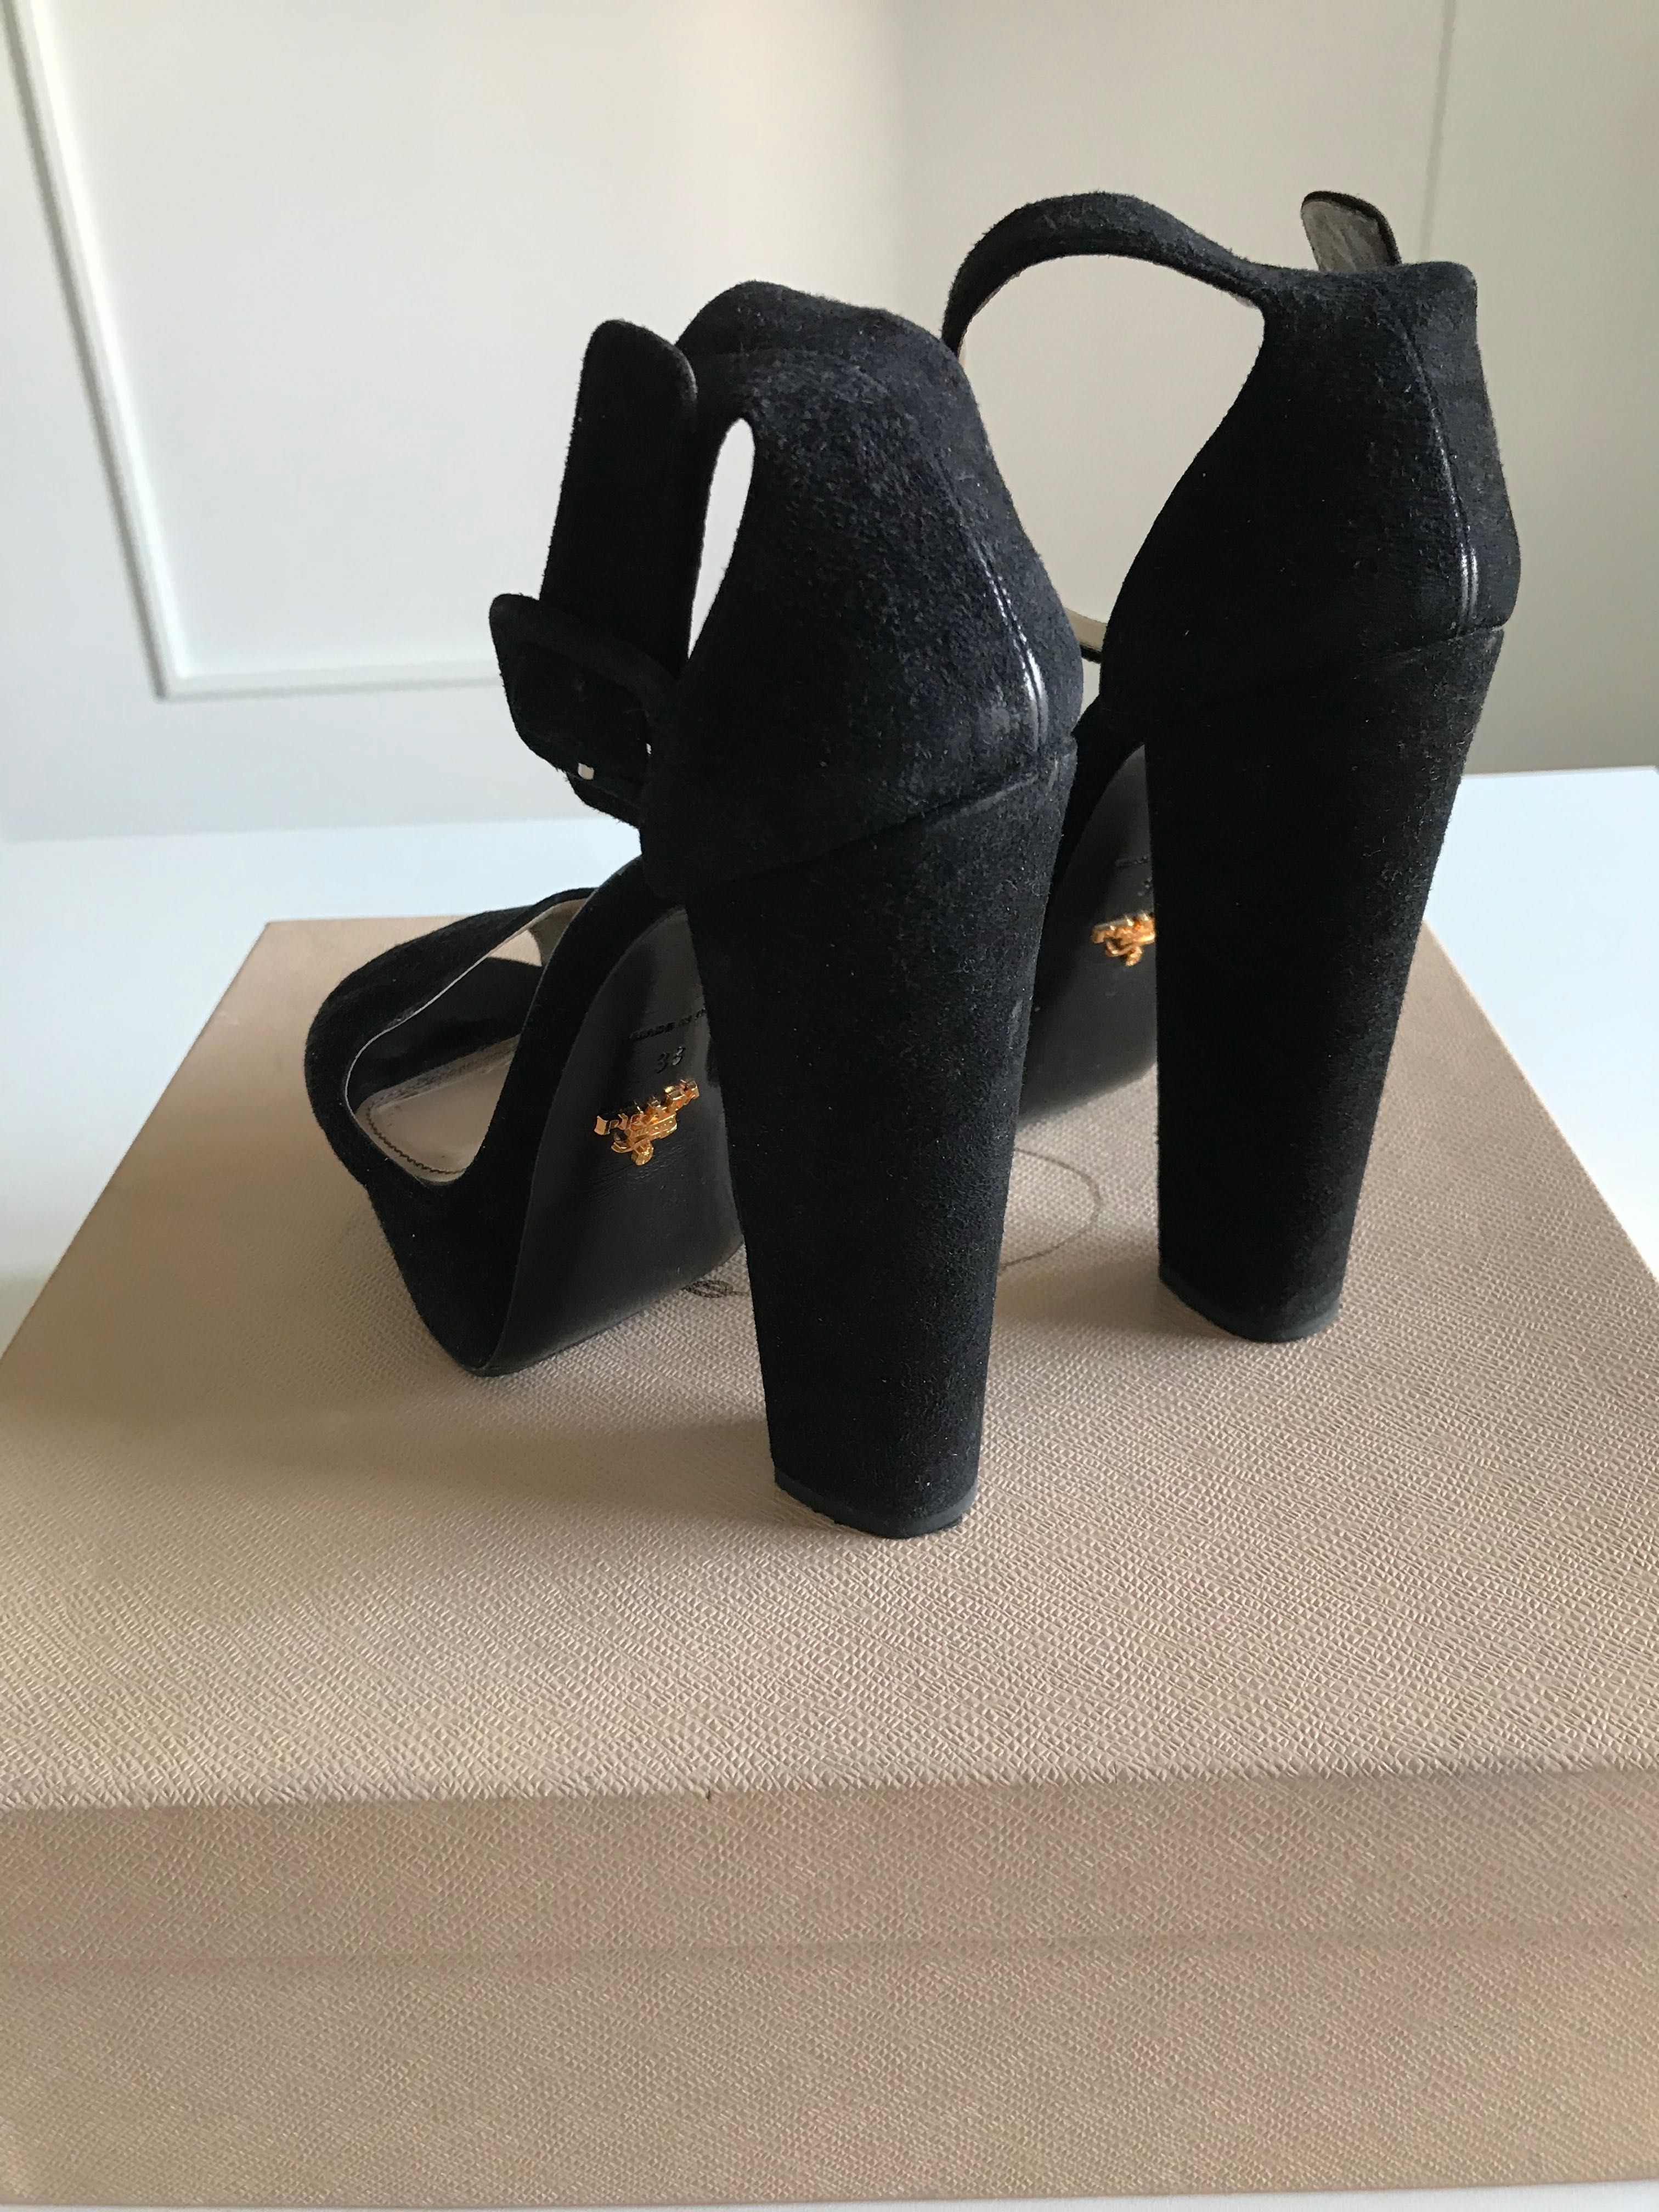 Босоножки Prada и туфли Casadei Италия 38 размер оригинал